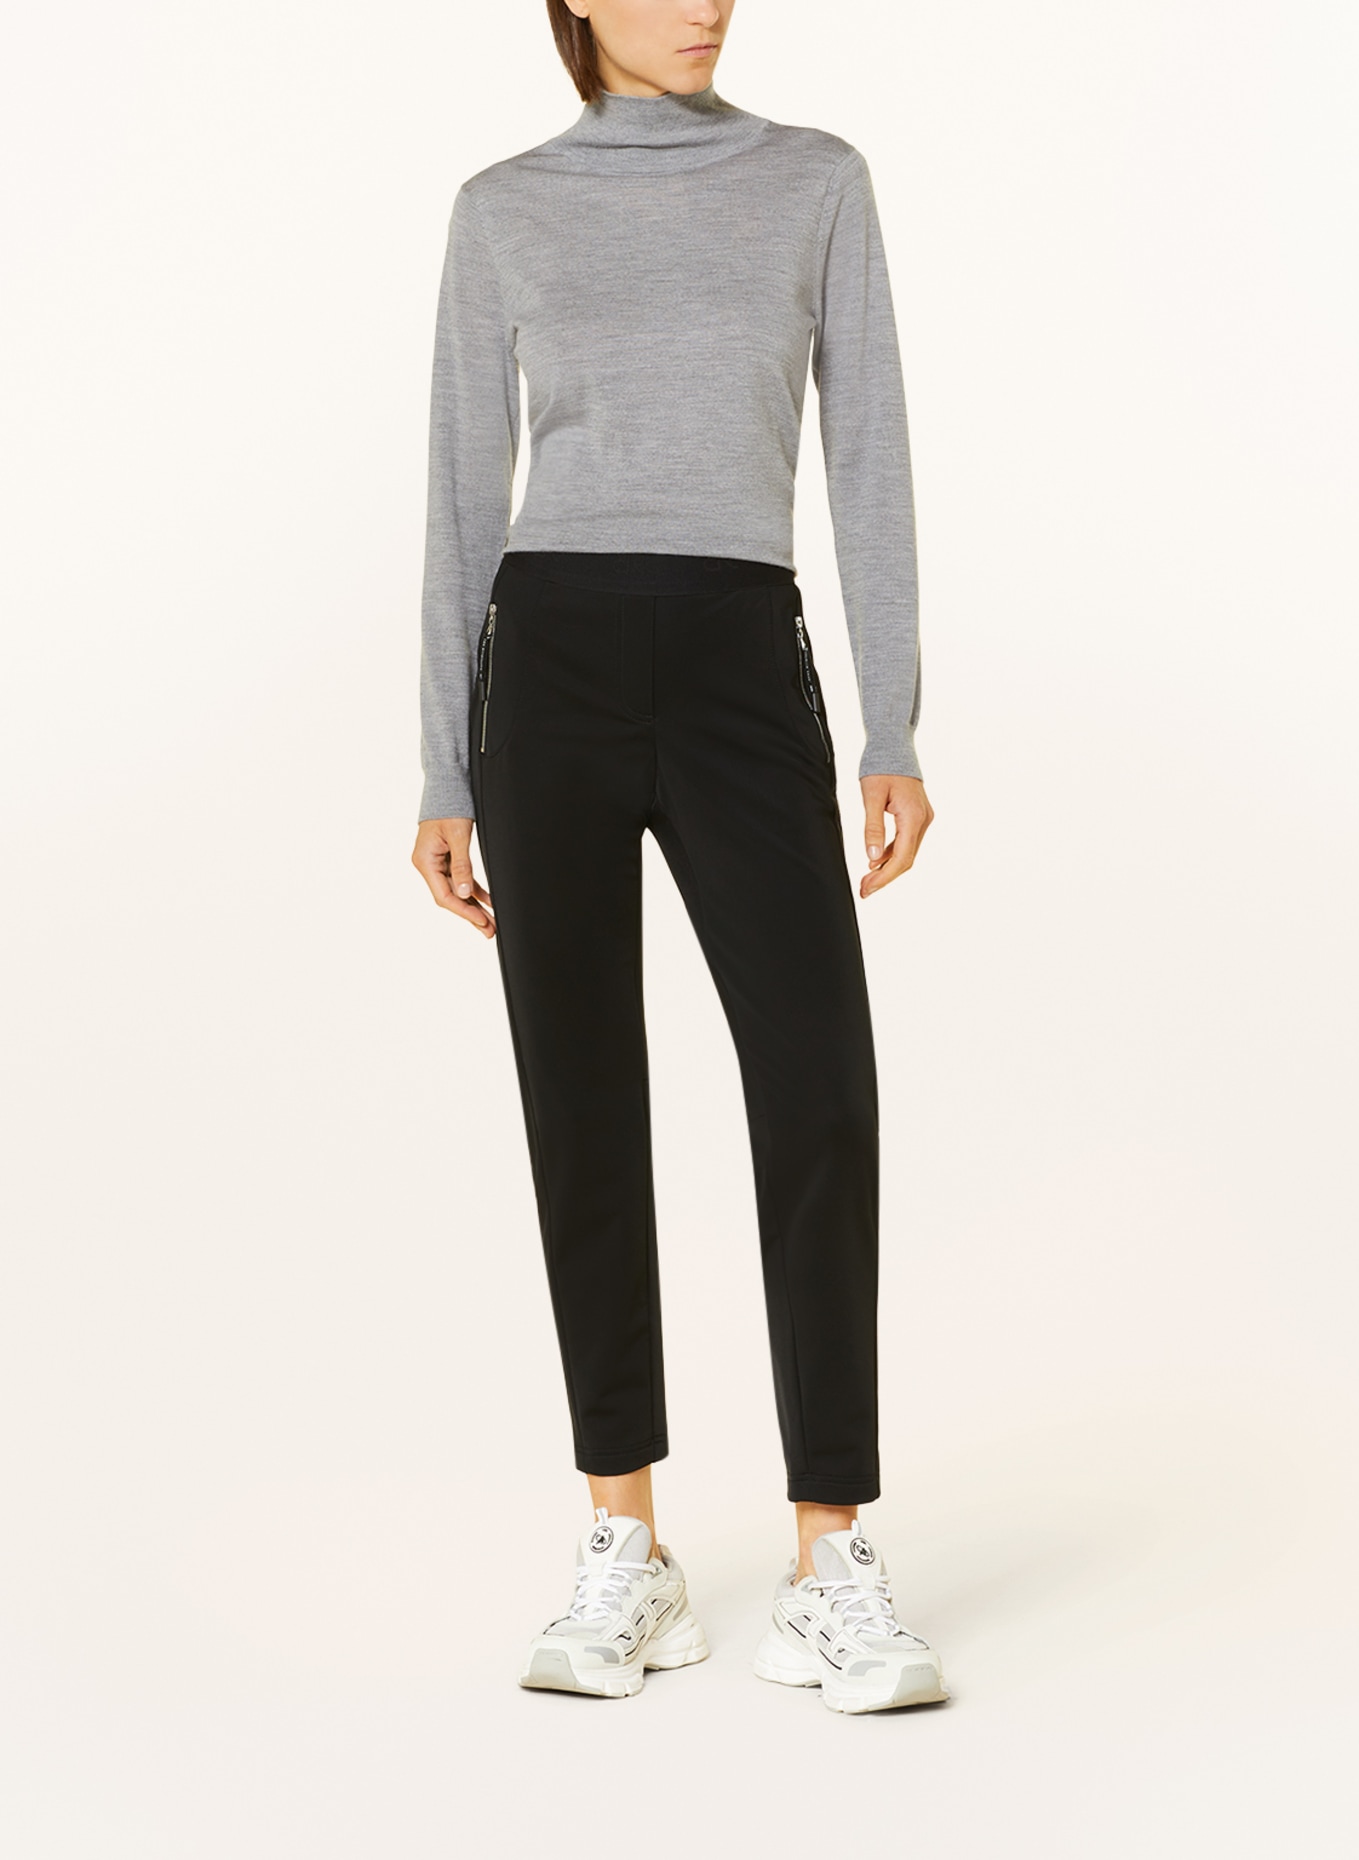 RAFFAELLO ROSSI Pants in jogger style, Color: BLACK (Image 2)